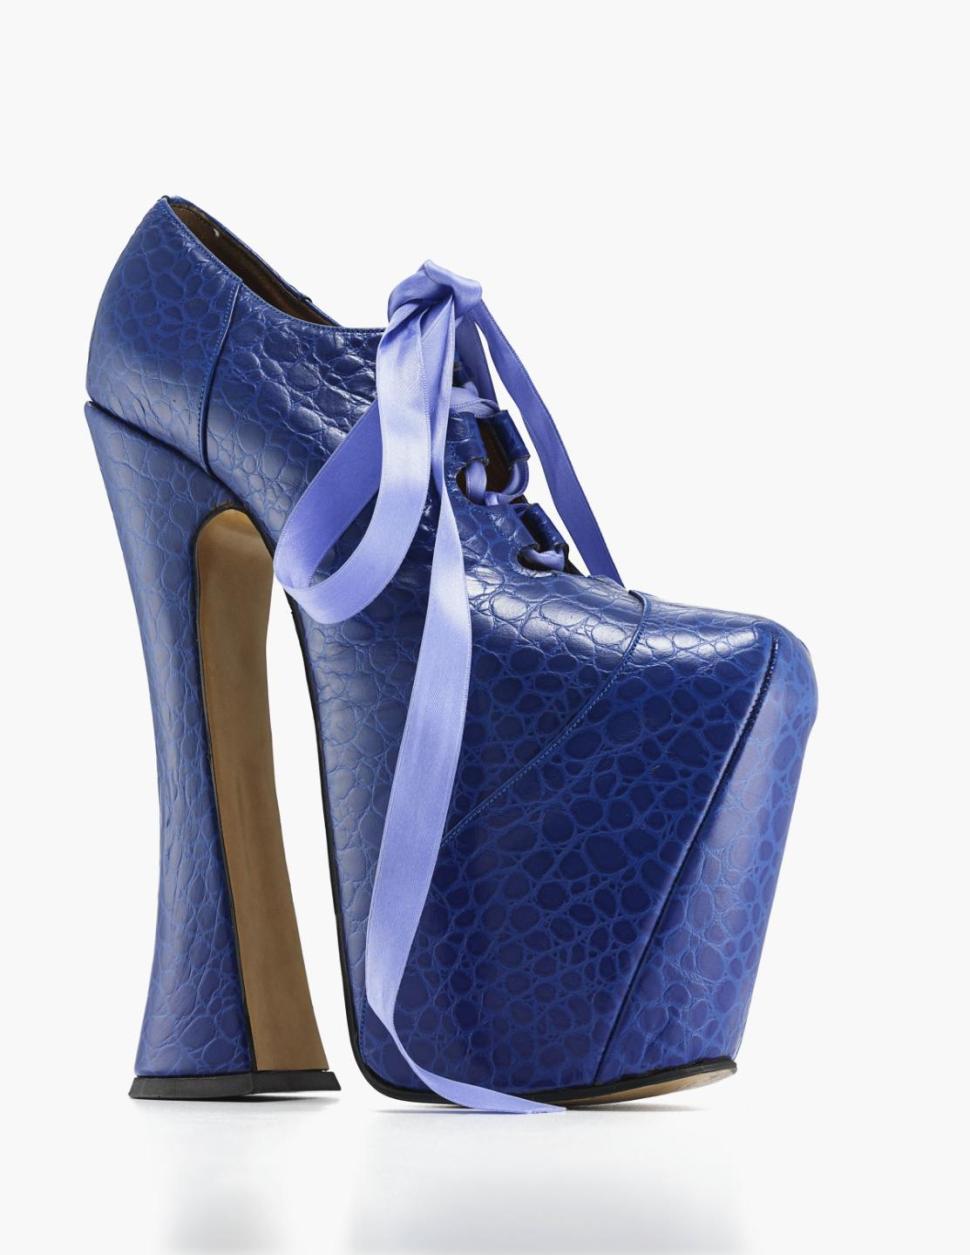 布魯克林博物館將展出「Killer Heels」特展。圖為Vivienne Westwood所設計的高跟鞋。